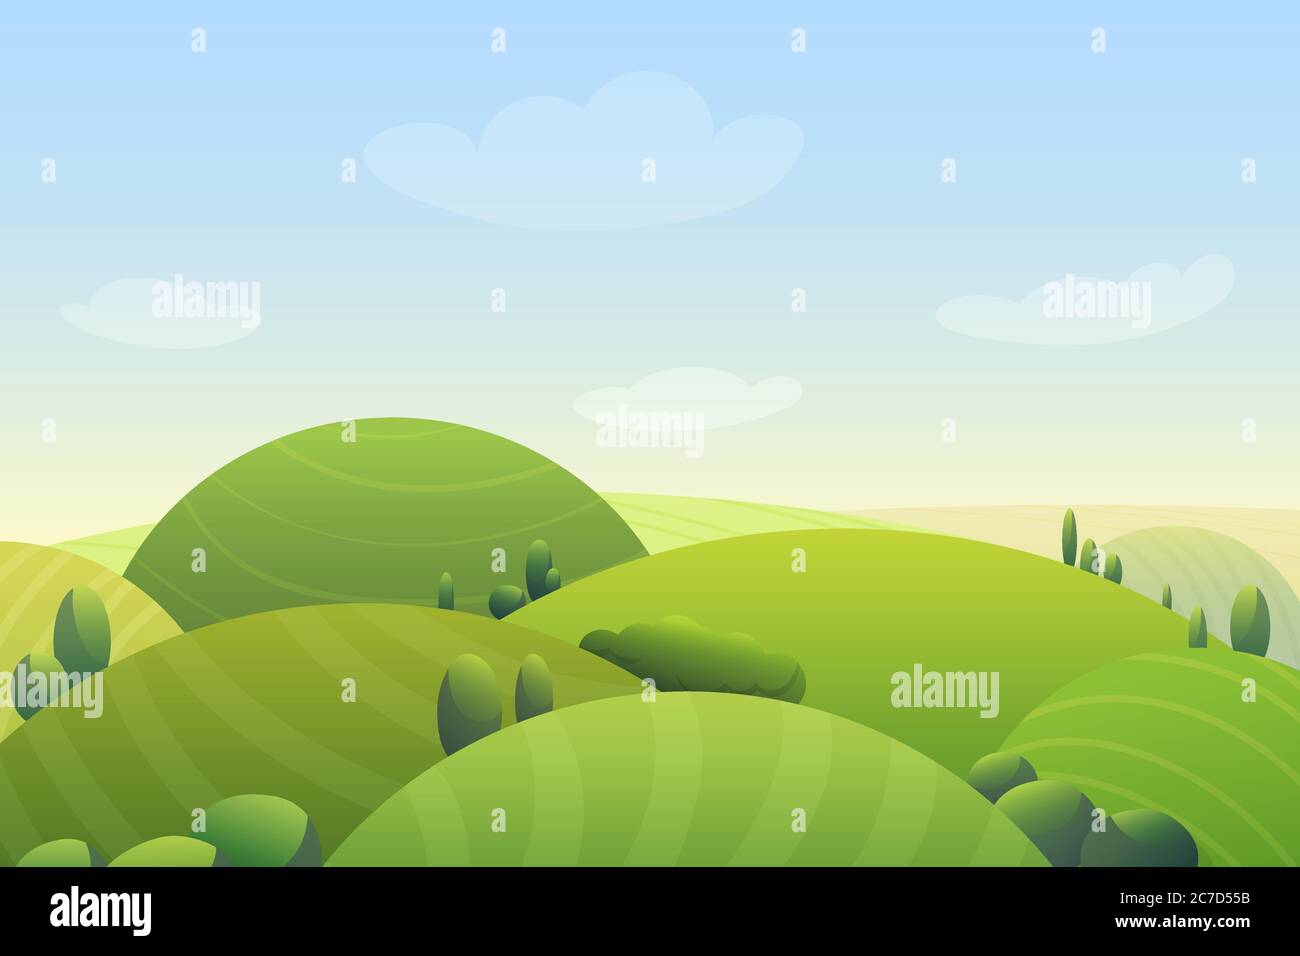 Wolkiger blauer Himmel über grünen Hügeln und grünen Bäumen in Wiese Cartoon niedlichen Vektor-Illustration Stock Vektor